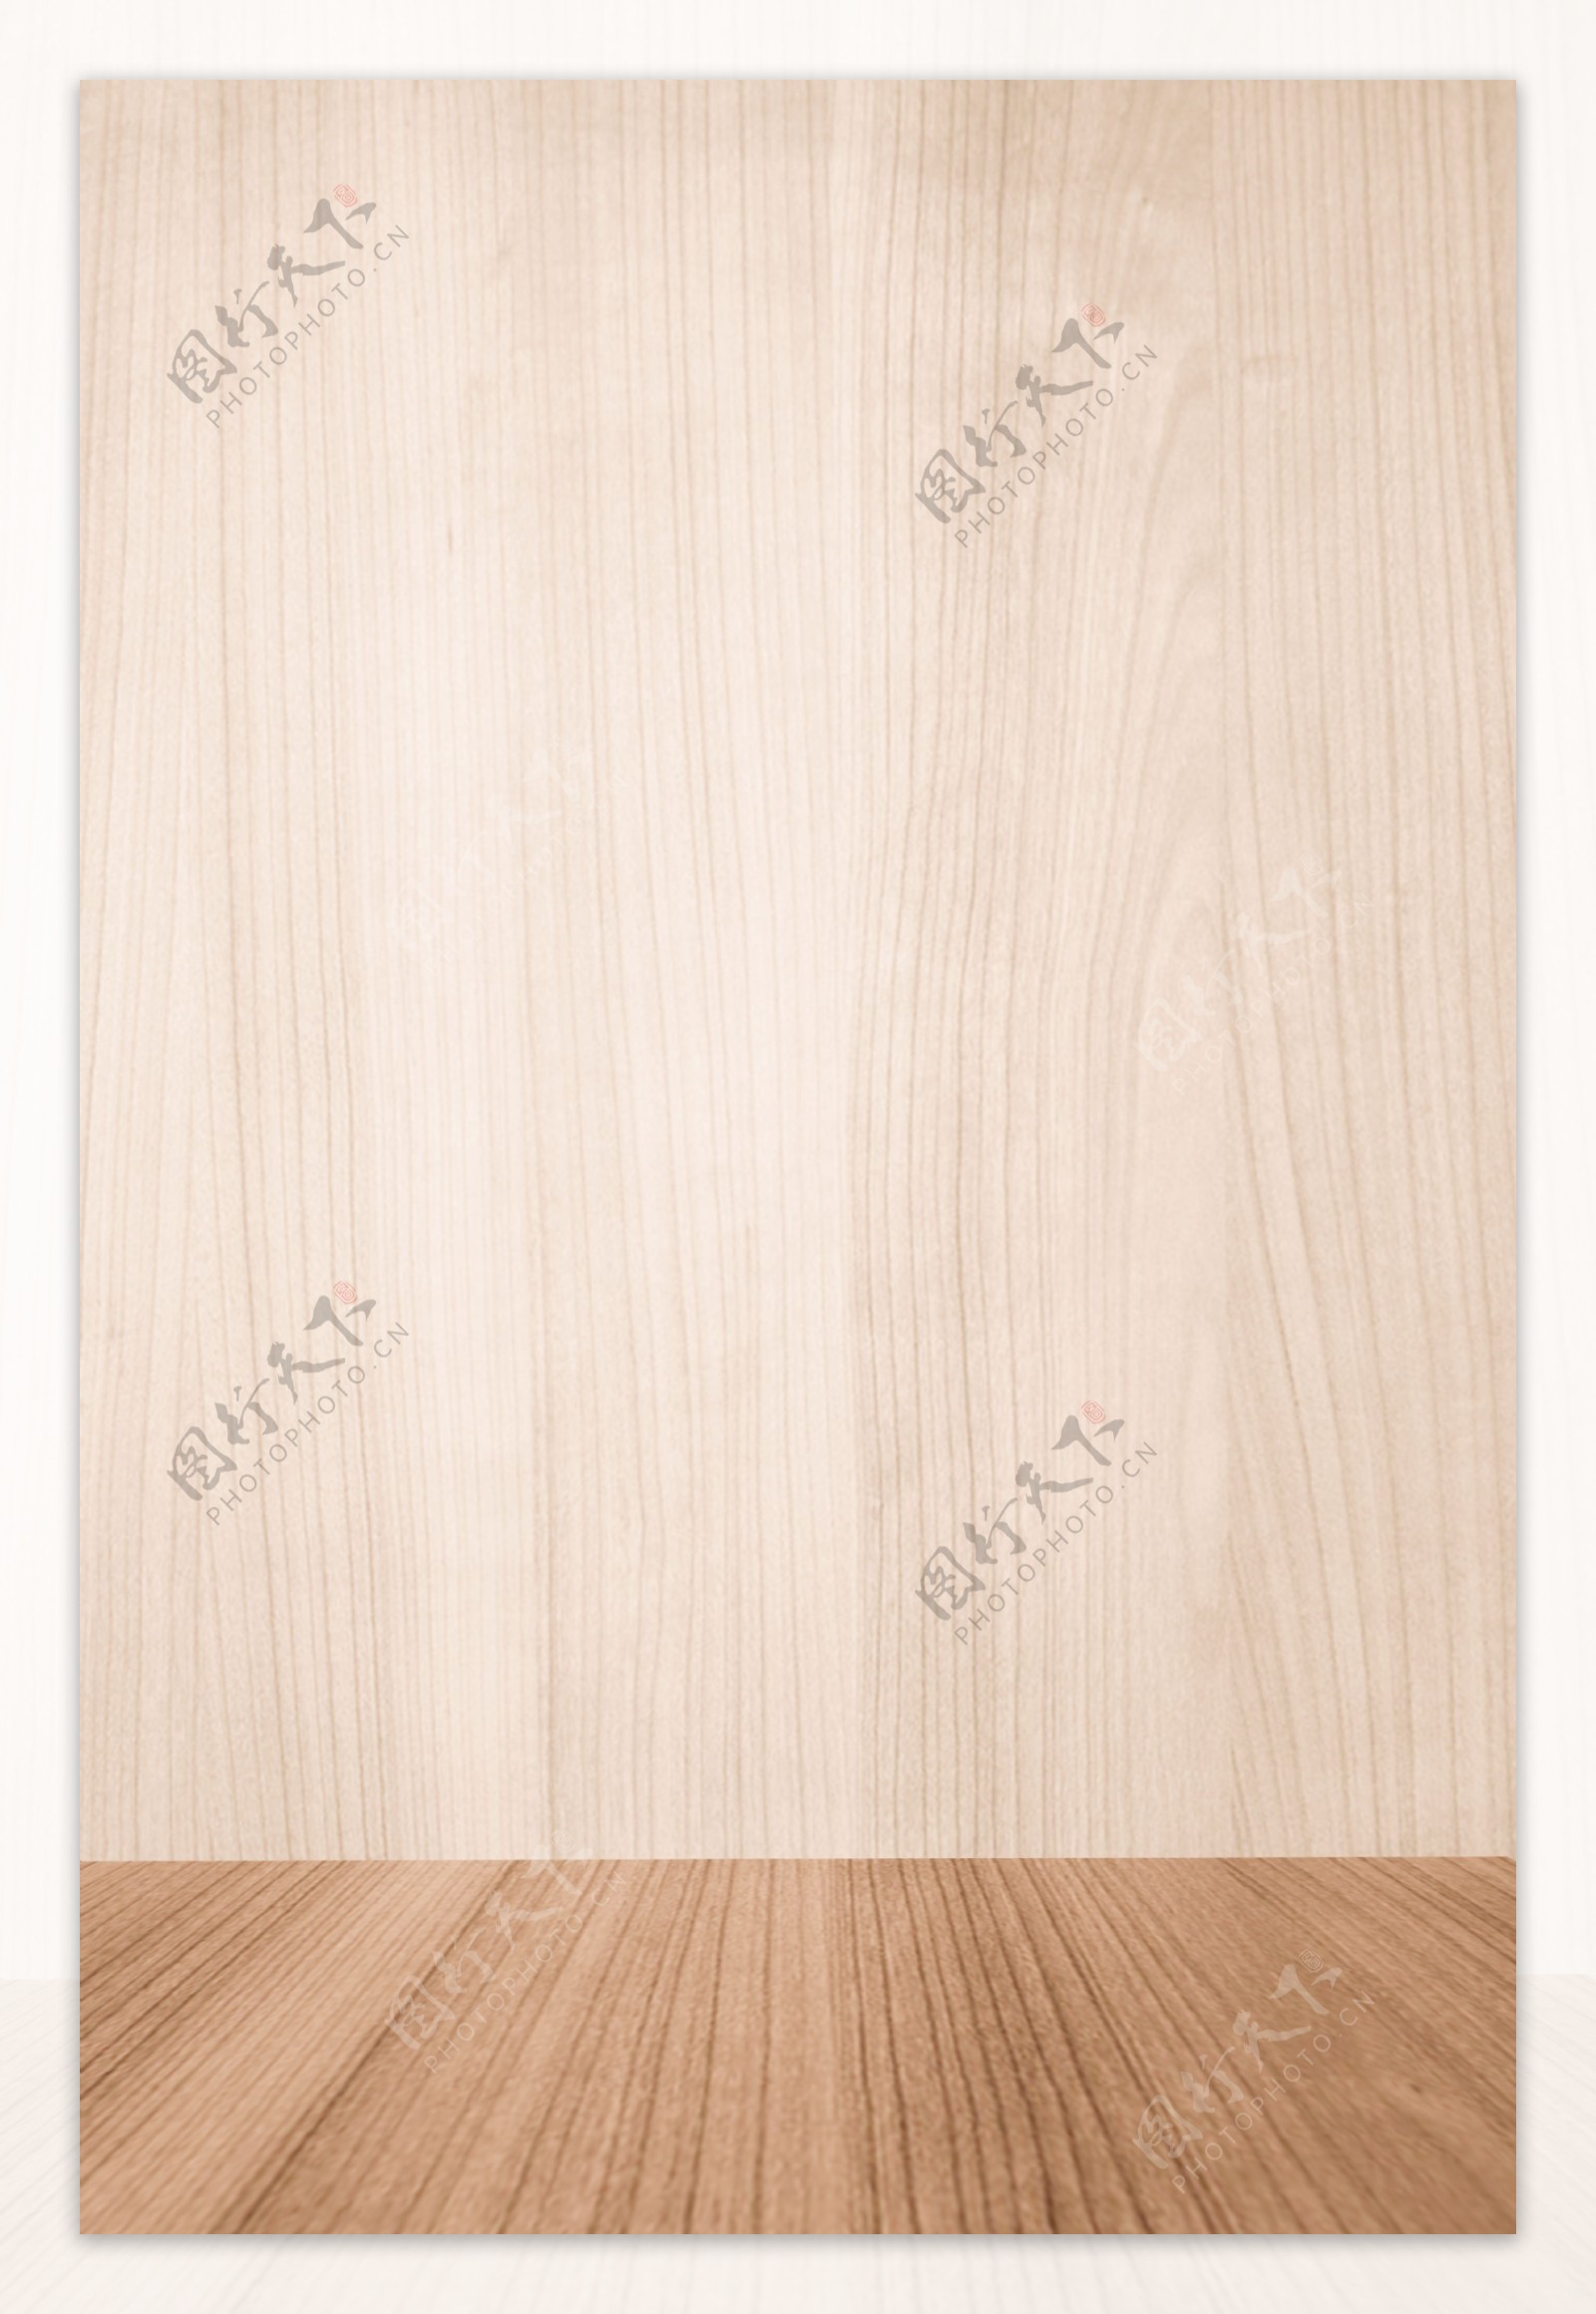 木纹木桌纹理餐桌背景素材